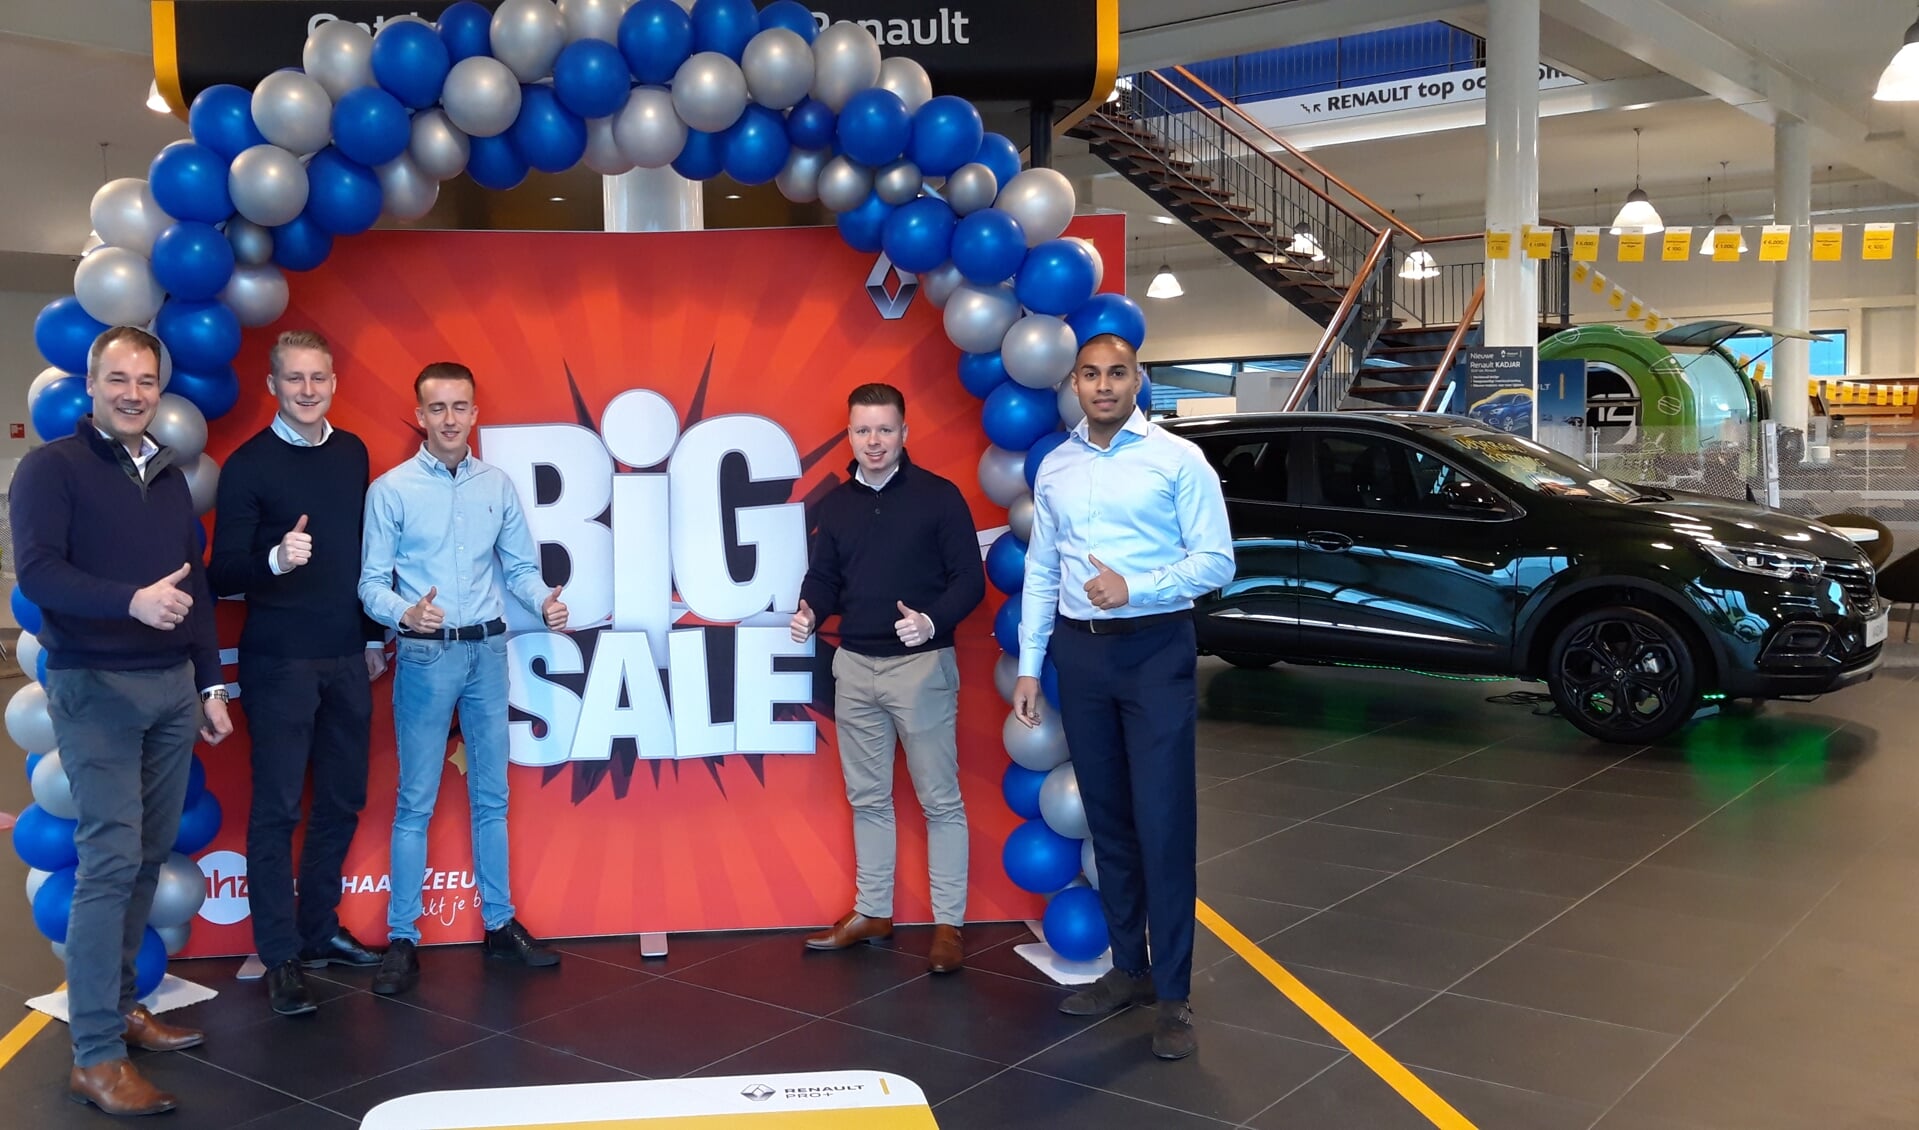 Het verkoopteam is klaar voor de Big Sale, met van links naar rechts Robert Schaap, Lars Dukker, Tobias van de Ree, Jordi Vrijmoed en Ismail Aliradja.